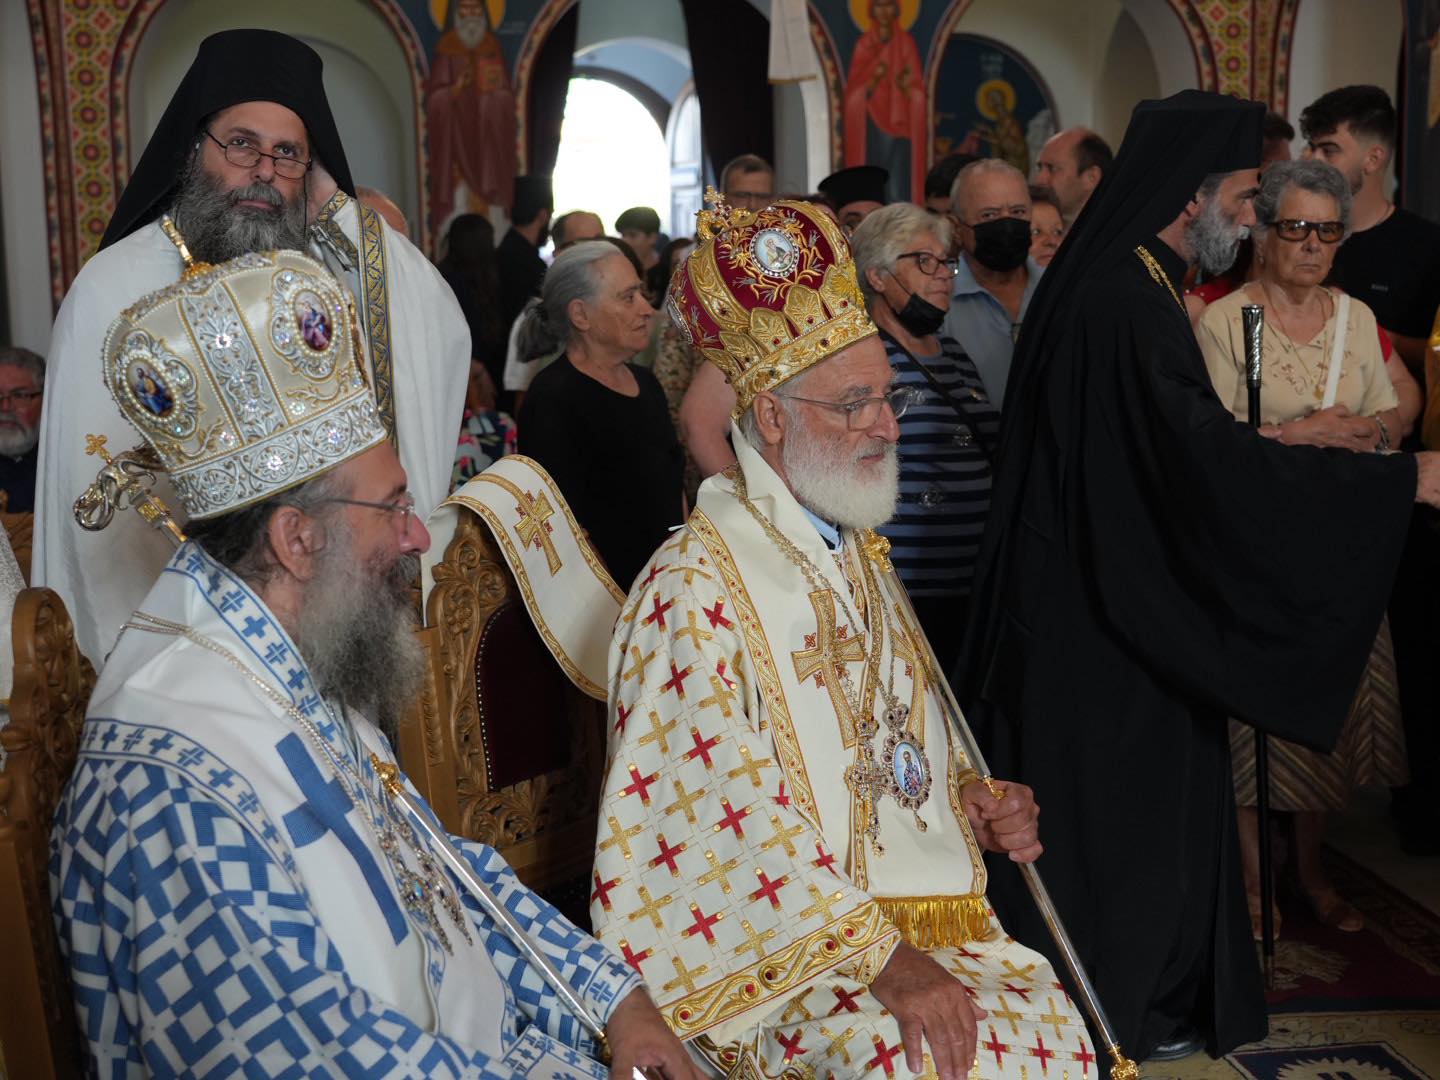 Μητροπολιτικός Ναός του Αγίου Ανδρέα Αρχιεπισκόπου Κρήτης